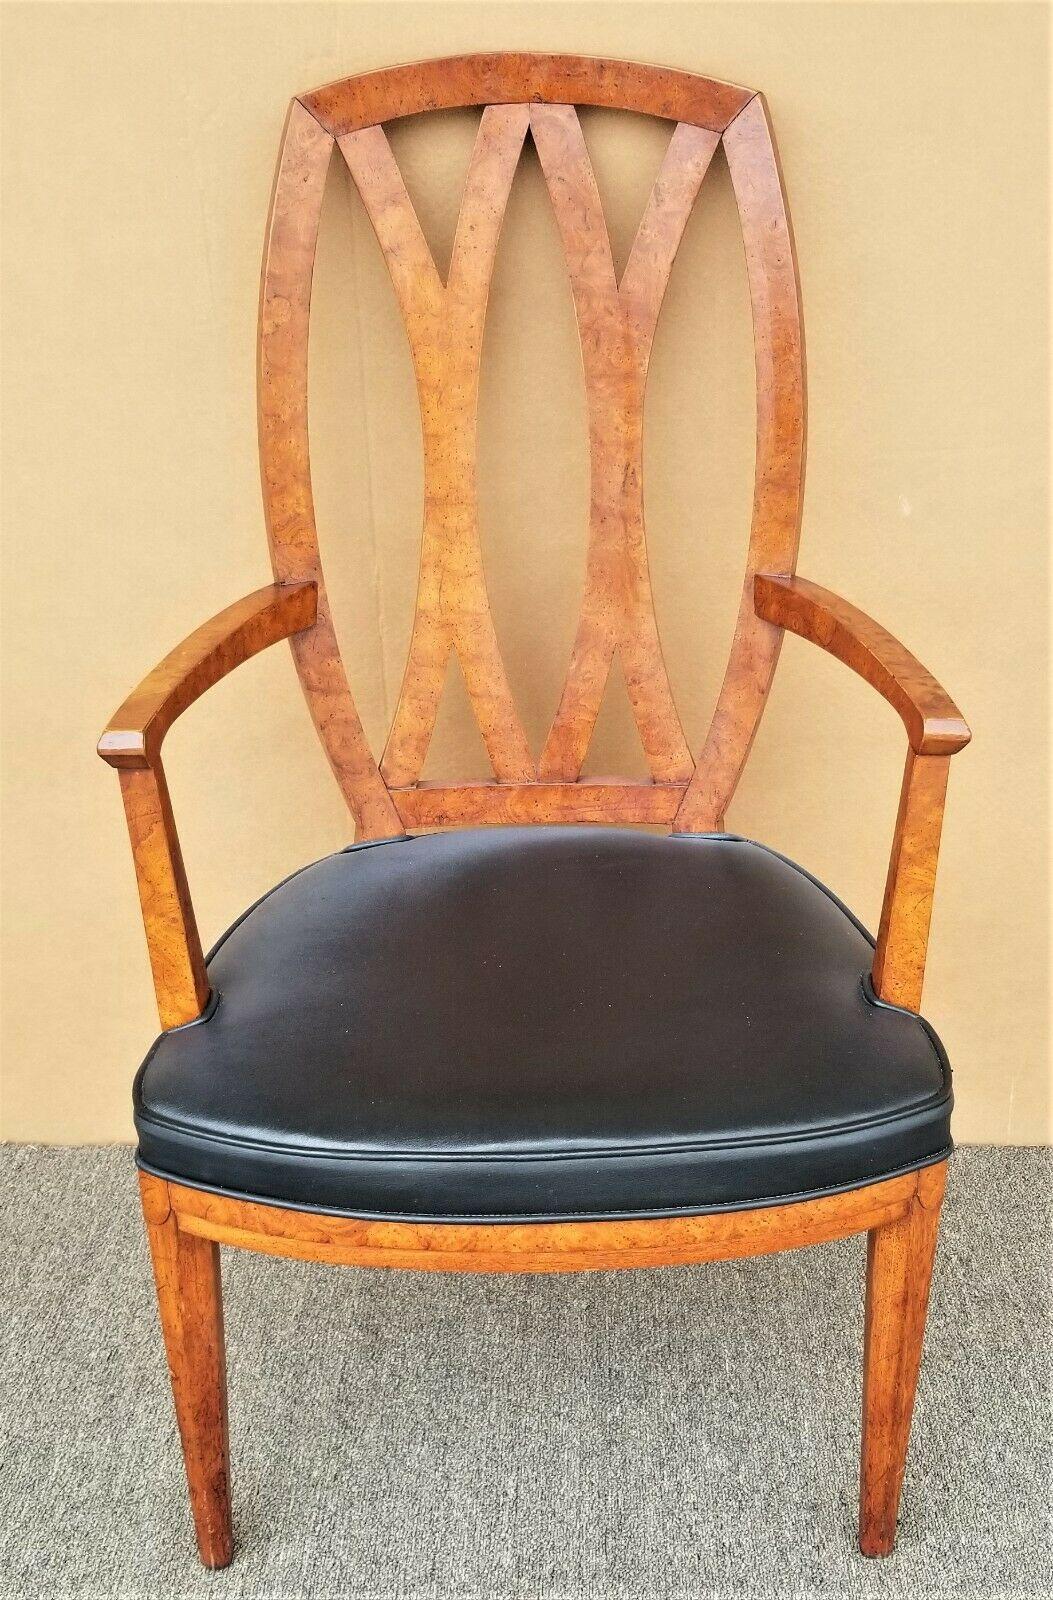 Angebot einer unserer jüngsten Palm Beach Estate Fine Furniture Acquisitions of A 
Vintage Henredon Wurzelholz Pretzel zurück Sessel Dining Schreibtisch Stuhl

Ungefähre Maße in Zoll
40,75